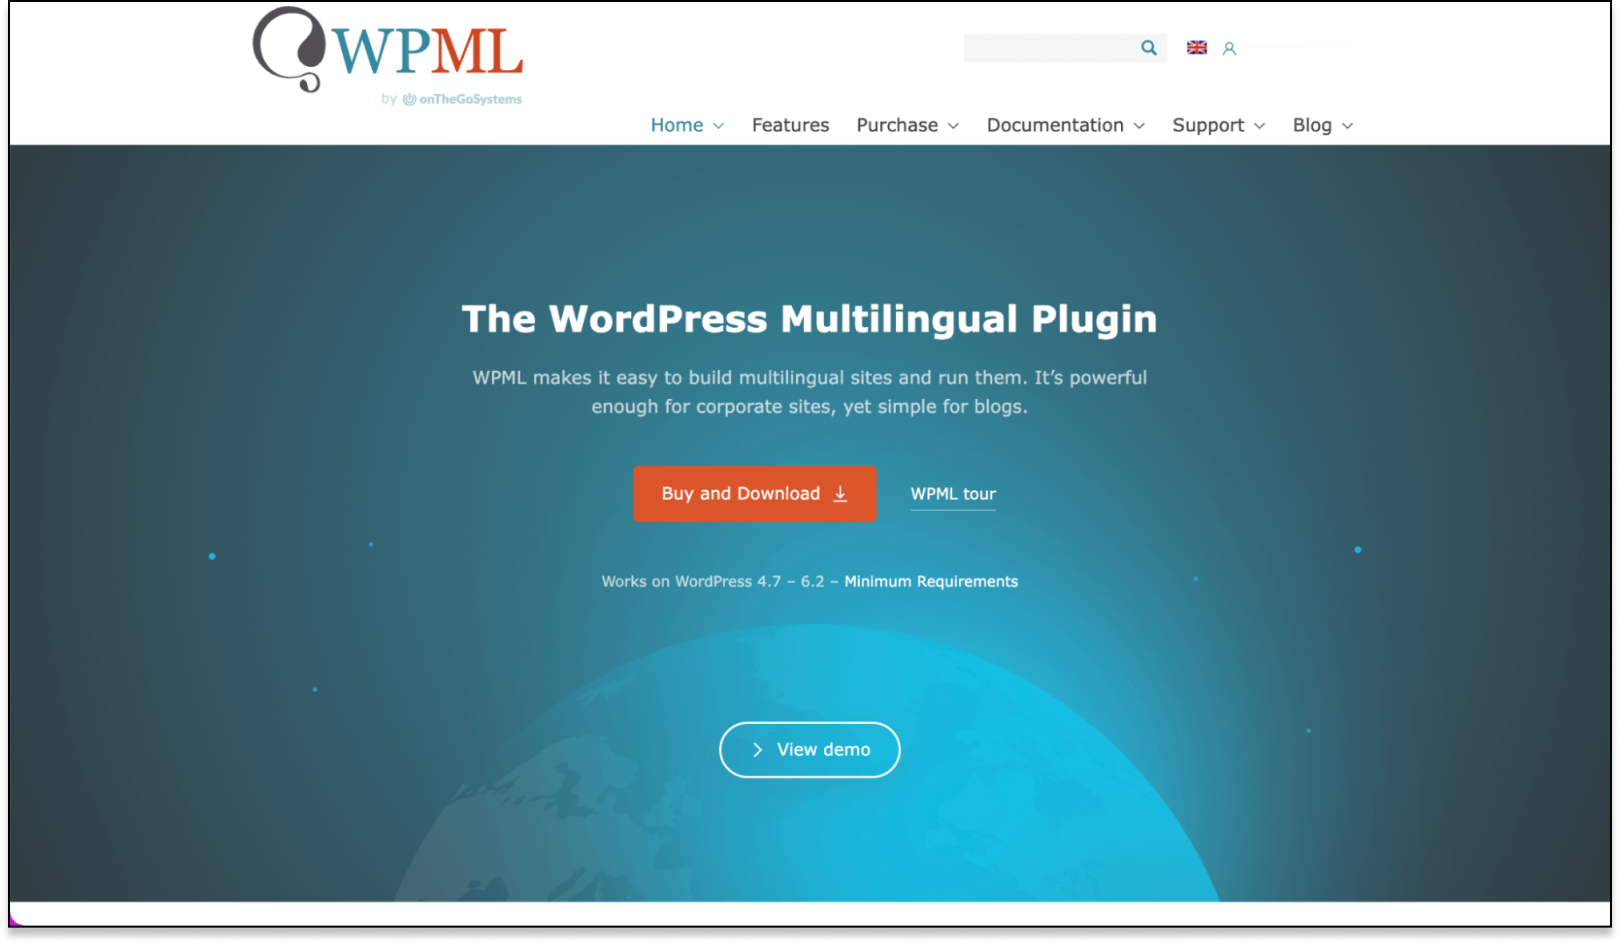 Screenshot of WPML website.